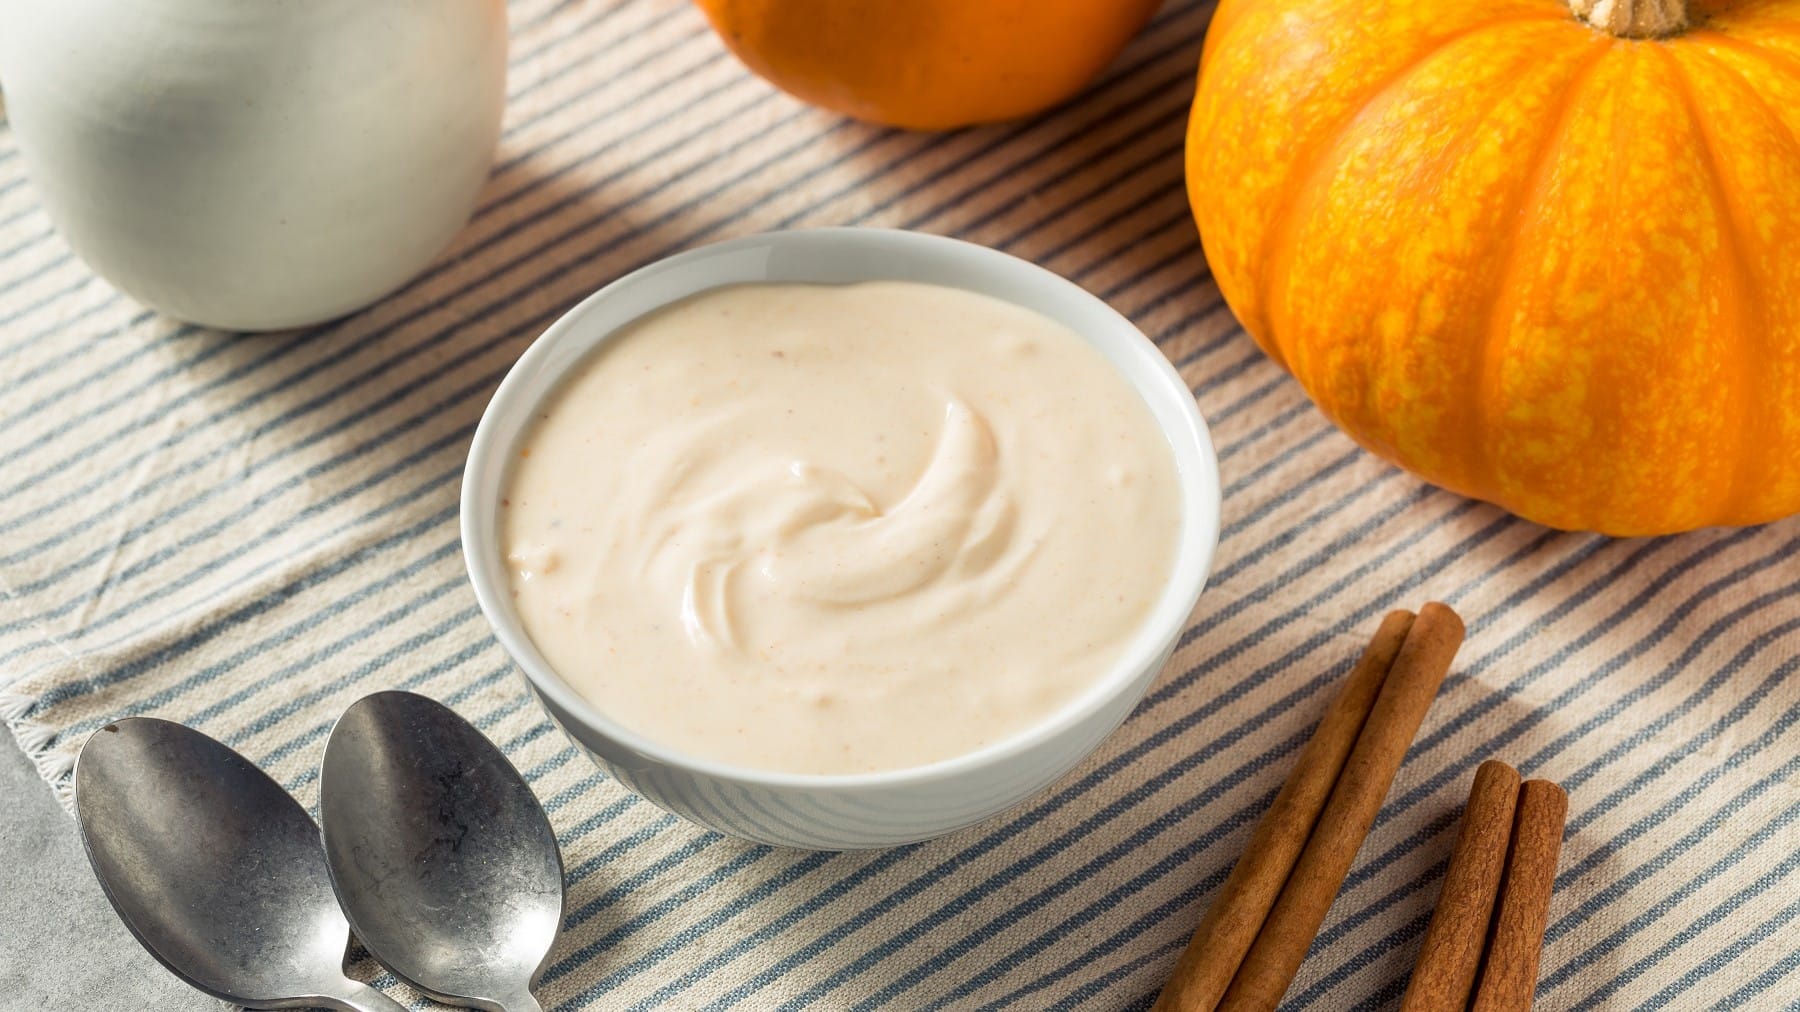 Pumpkin Spice Joghurt, serviert in einer Schale auf einem einfach gedeckten Küchentisch mitsamt ein paar Stangen Zimt und einem Hokkaidokürbis.